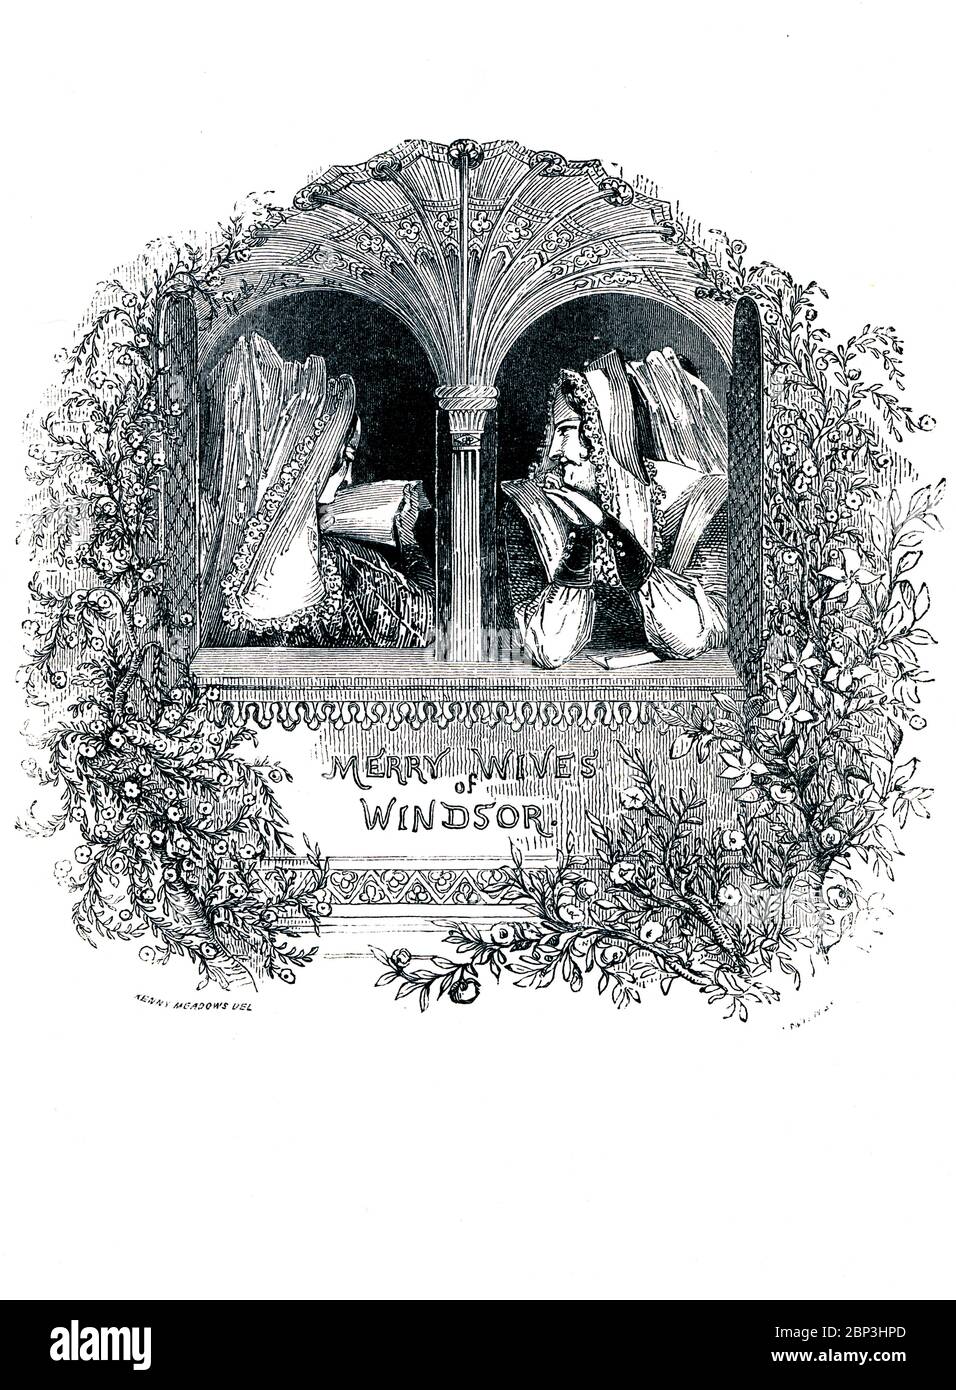 Merry Wives of Windsor Victorian libro frontispiece para la comedia de William Shakespeare sobre los esfuerzos románticos de Sir John Falstaff, del libro ilustrado Heroines of Shakespeare de 1849 Foto de stock